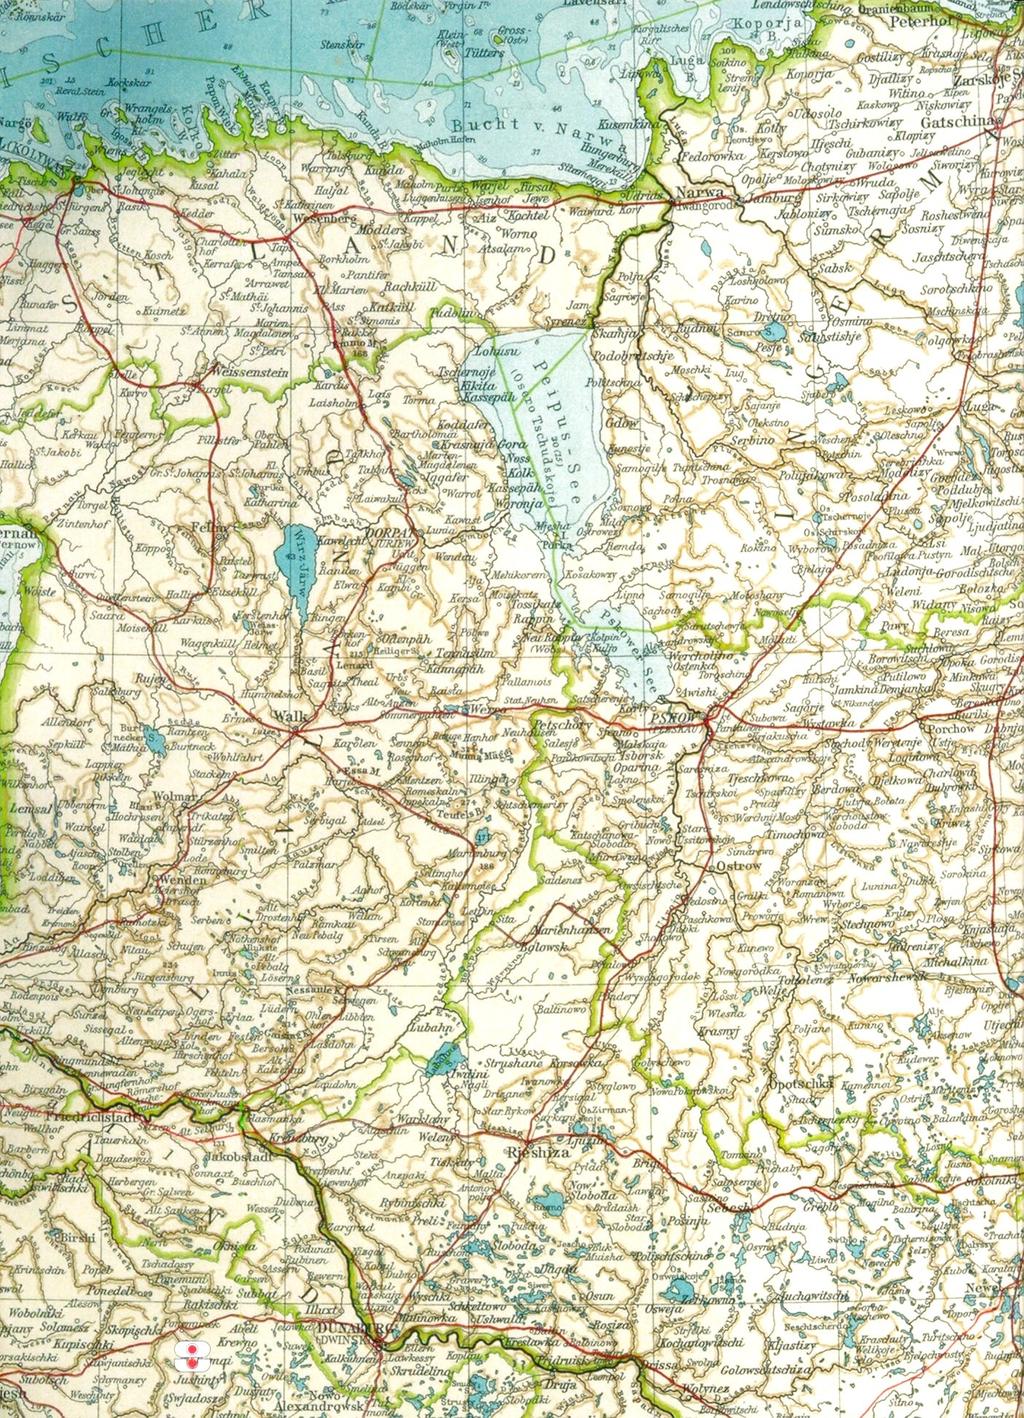 Compagnie Borgelins anden indsats i juli-august 1919, i Rusland, mellem Pskow og Ostrow. Indtegnet på et kort over Baltikum fra 1915. Målestok Ca. 10 km 12 1 Compagnie Borgelins anden indsats: 1.